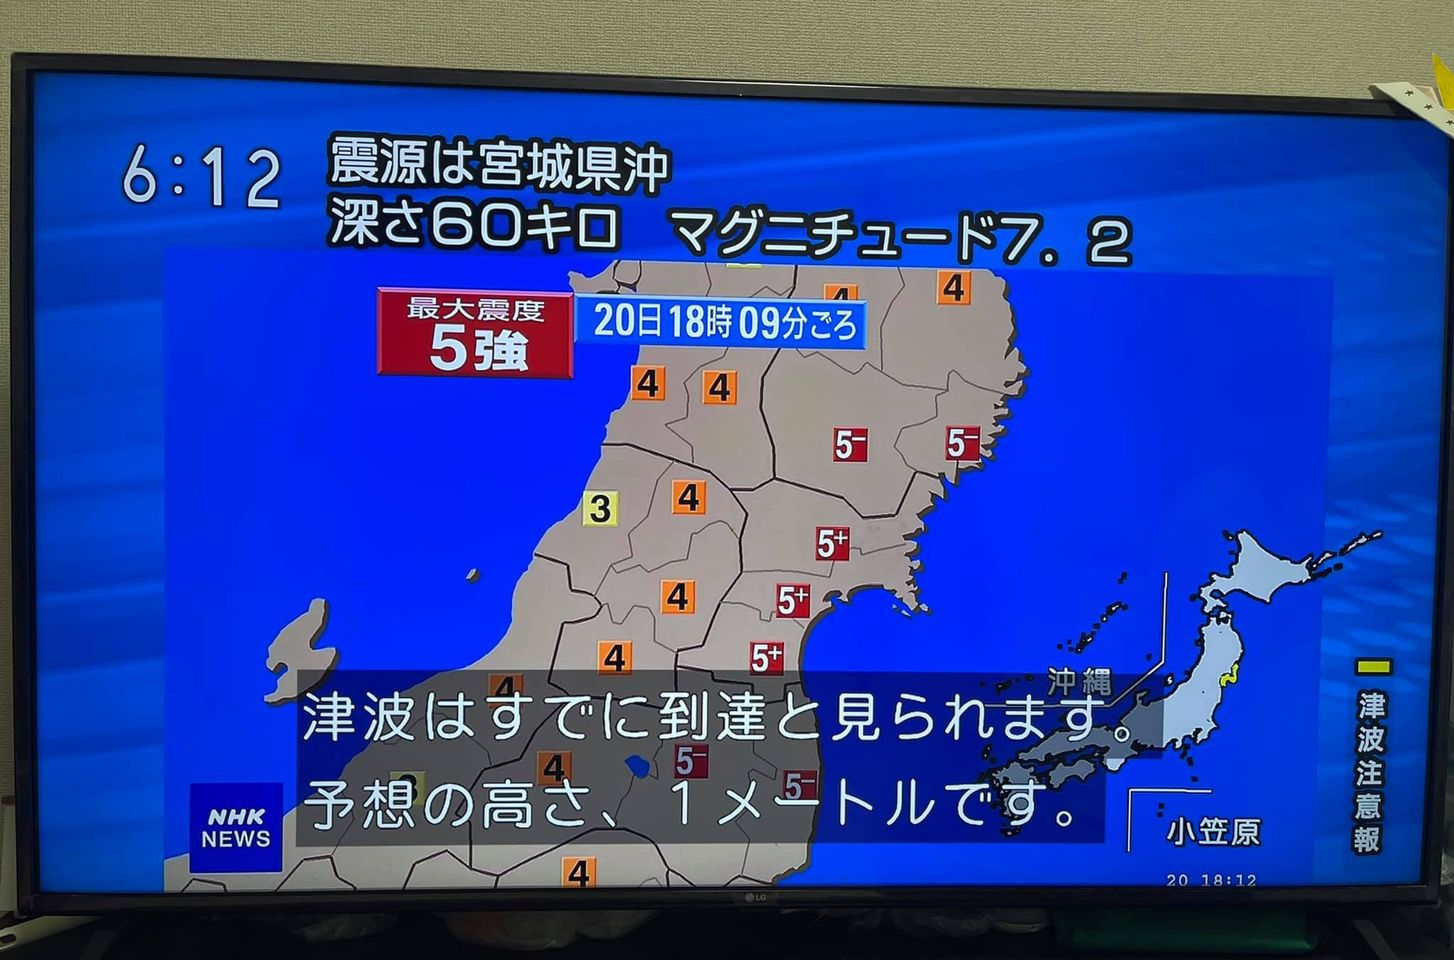 ဂျပန်နိုင်ငံအရှေ့ပိုင်း Miyagiခရိုင်မှပြင်းအား 7.2 ရှိတဲ့ငလျင်လှုပ်သွာ